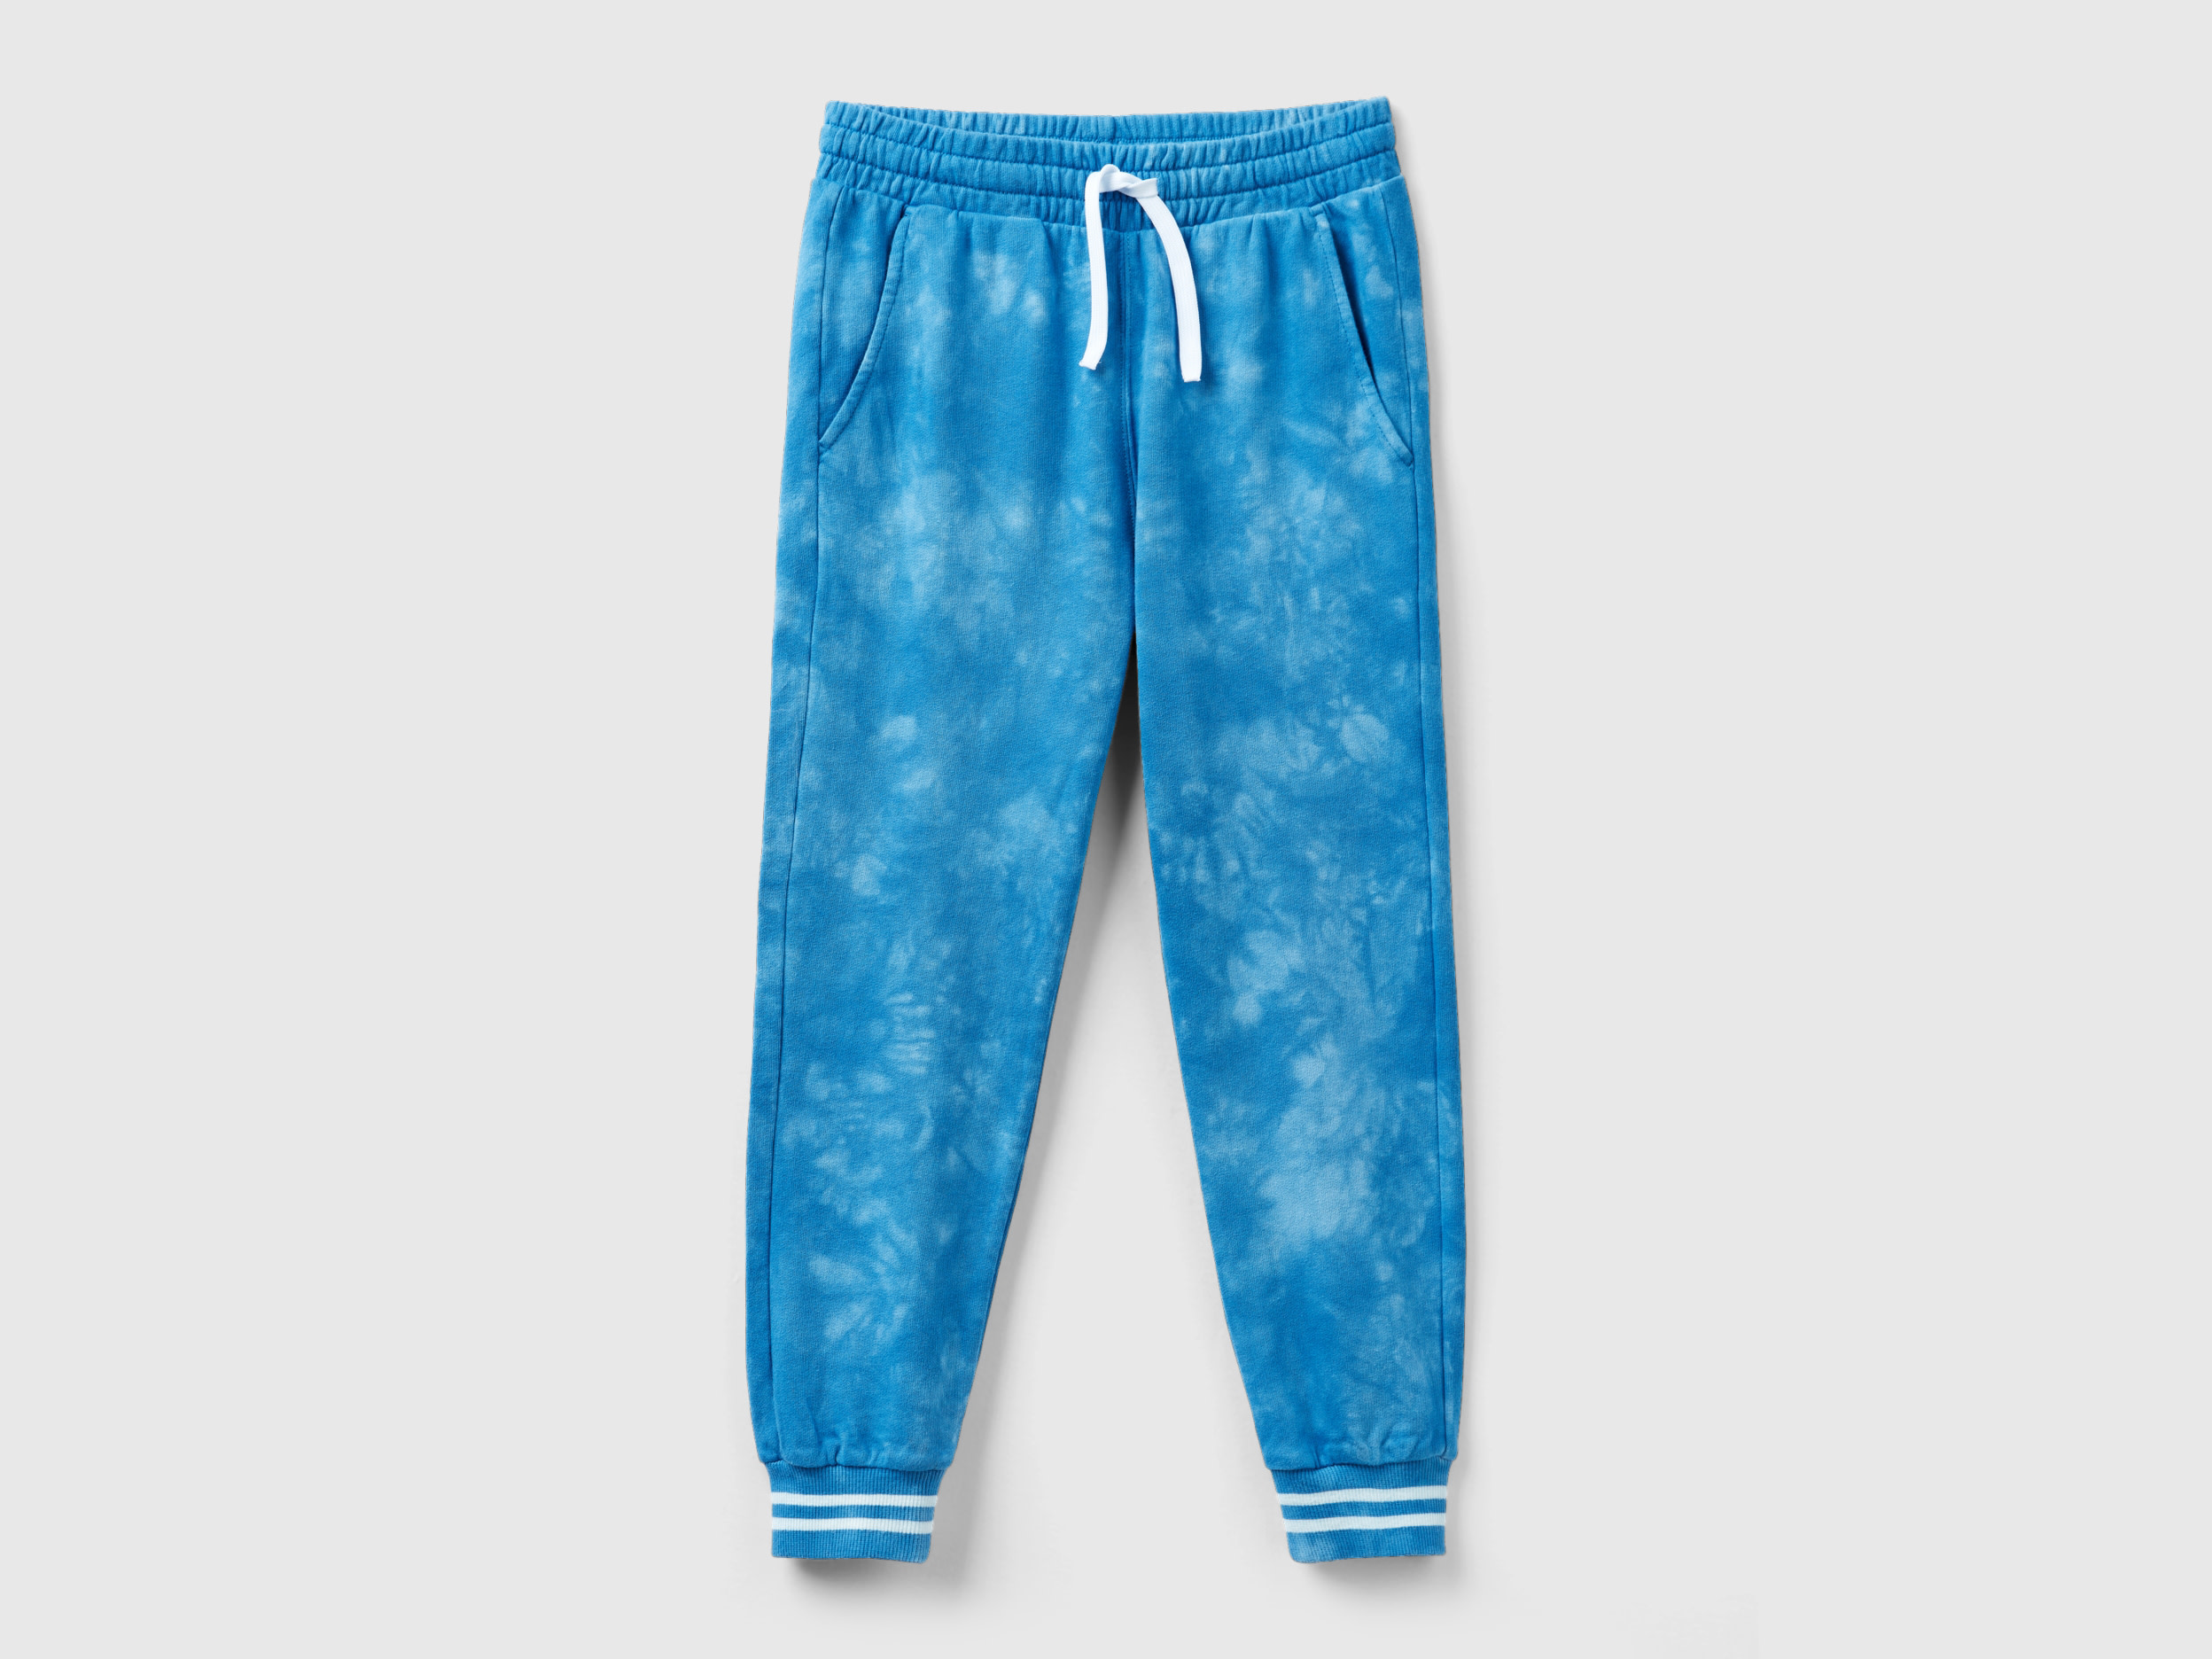 Benetton, Tie-dye Sweatpants, size L, Light Blue, Kids